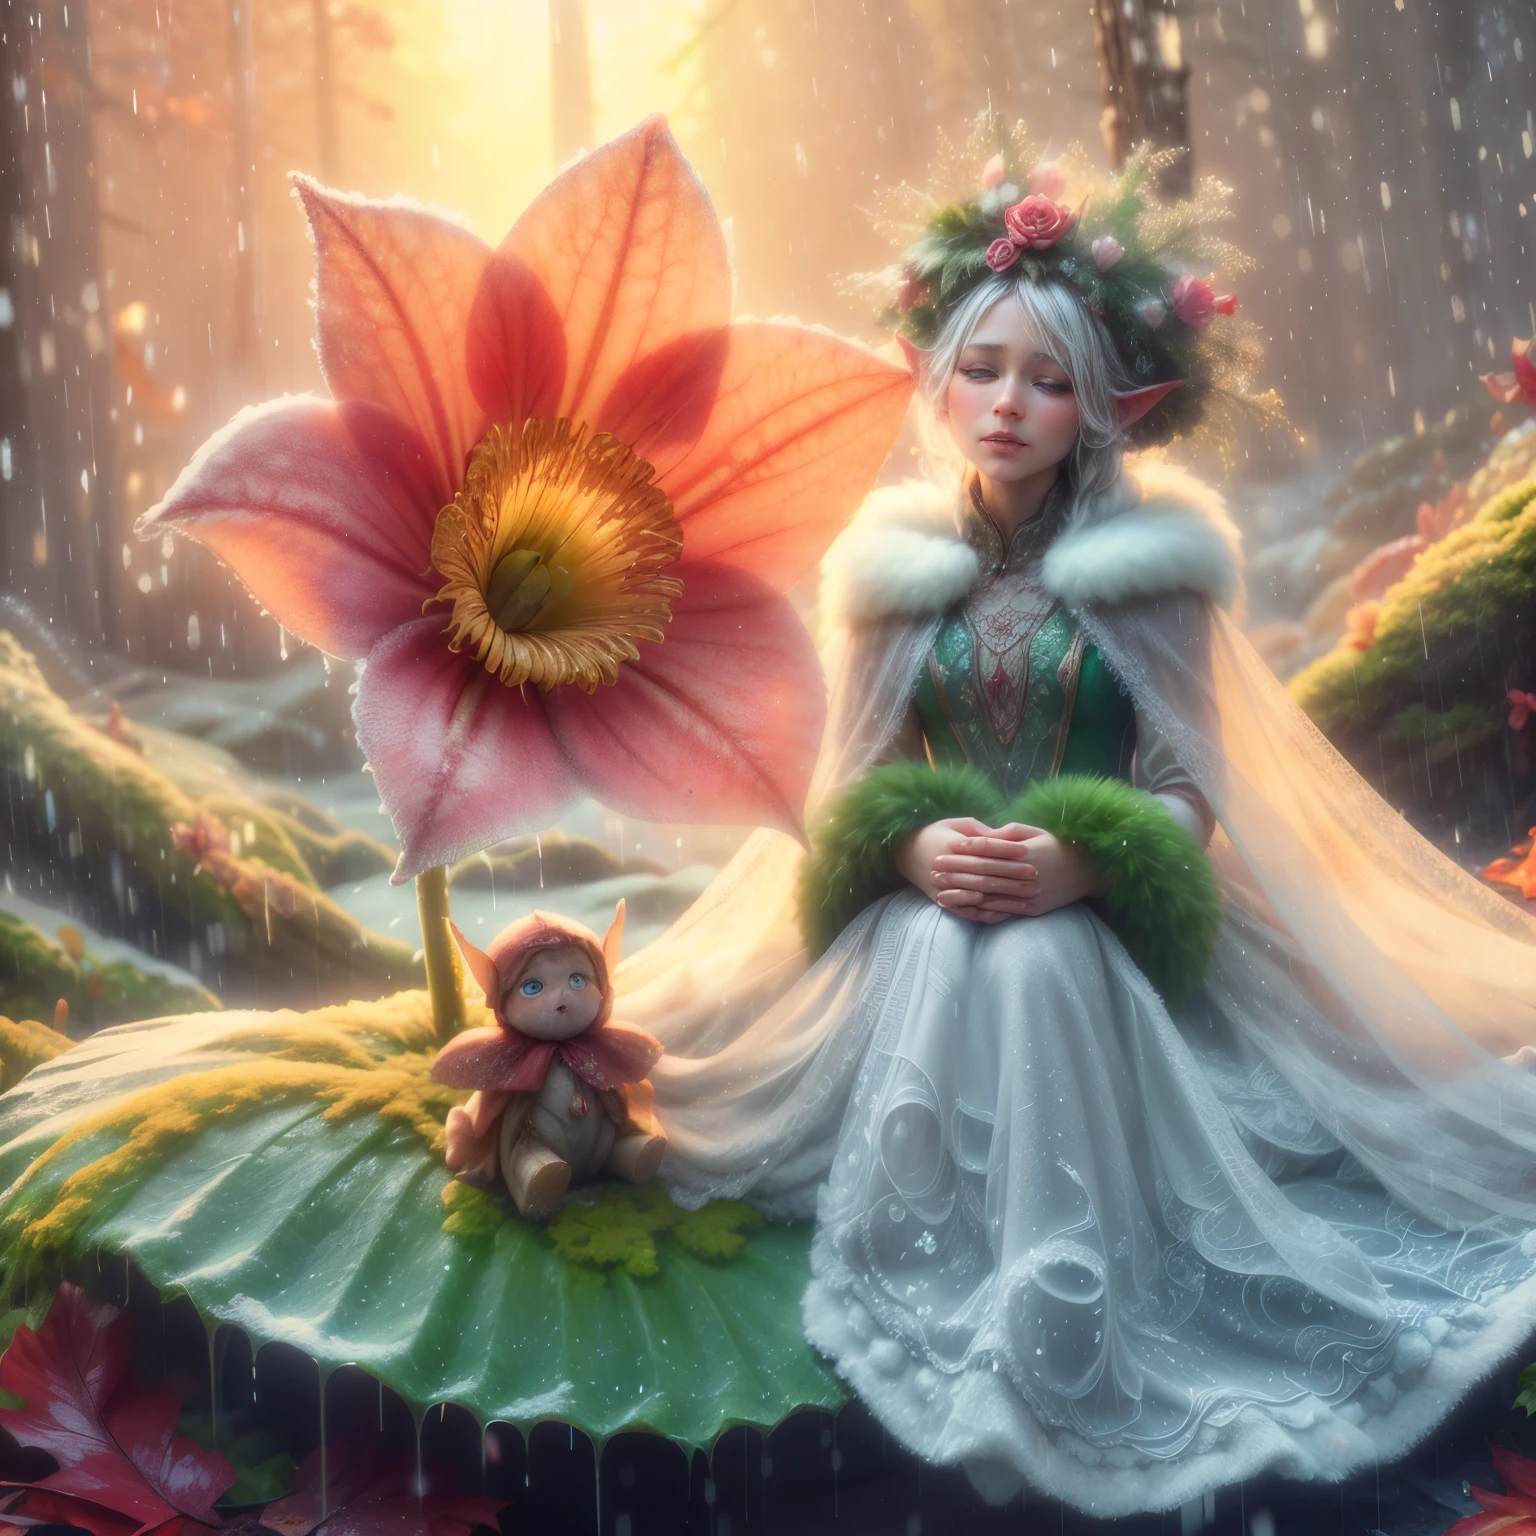 目は大きく開いており、虹彩は丸い, 冬の女王、雪で作られたガウスのガウンを着た美しいスウェーデン人女性, 露ほども大きな涙を流しながら、雨の中、穴の開いた大きな花の下の苔に覆われた葉の上に座って、優しく泣いている小さな妖精。, 雨林の背景, 小さな花, 露と雨粒で輝く, 斑点模様の日光を通して赤、オレンジ、黄色の色彩が見える